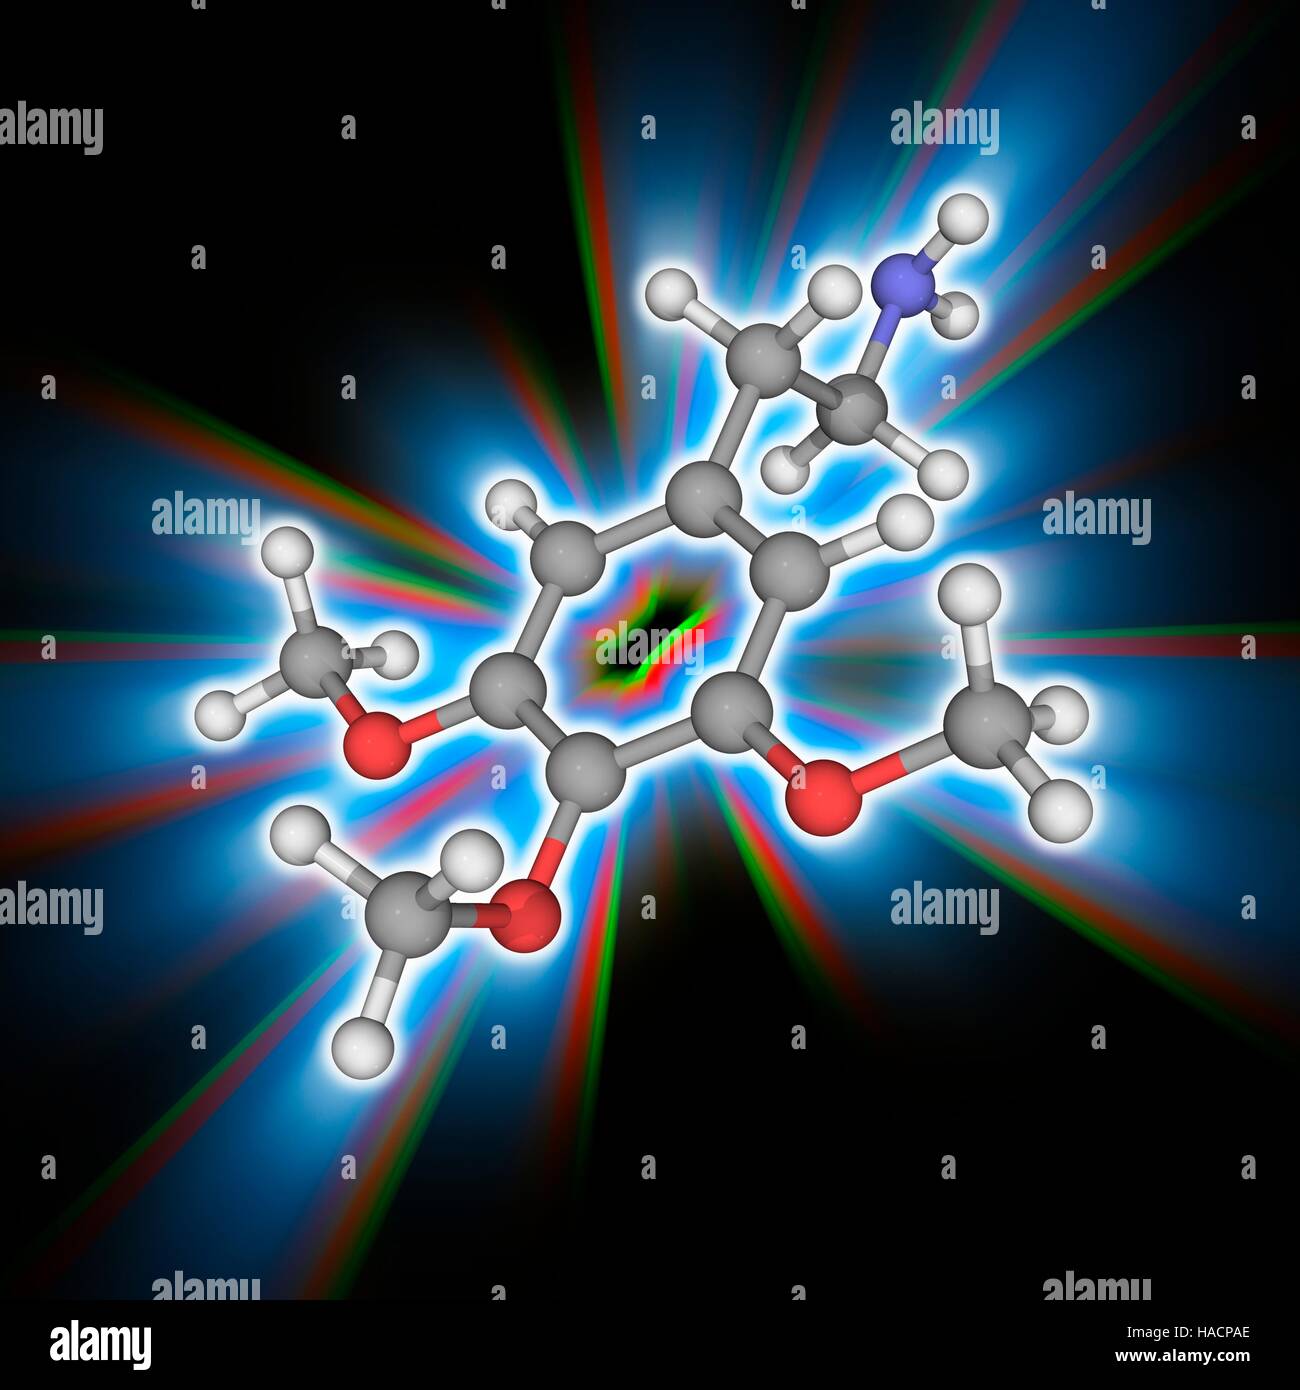 Meskalin. Molekülmodell von Phenethylamine Droge Meskalin (C11. H17. N.O3), ein natürlich vorkommendes Alkaloid psychedelische. Es hat die Droge LSD ähnlich halluzinogene Wirkung. Atome als Kugeln dargestellt werden und sind farblich gekennzeichnet: Kohlenstoff (grau), Wasserstoff (weiß), Stickstoff (blau) und Sauerstoff (rot). Abbildung. Stockfoto